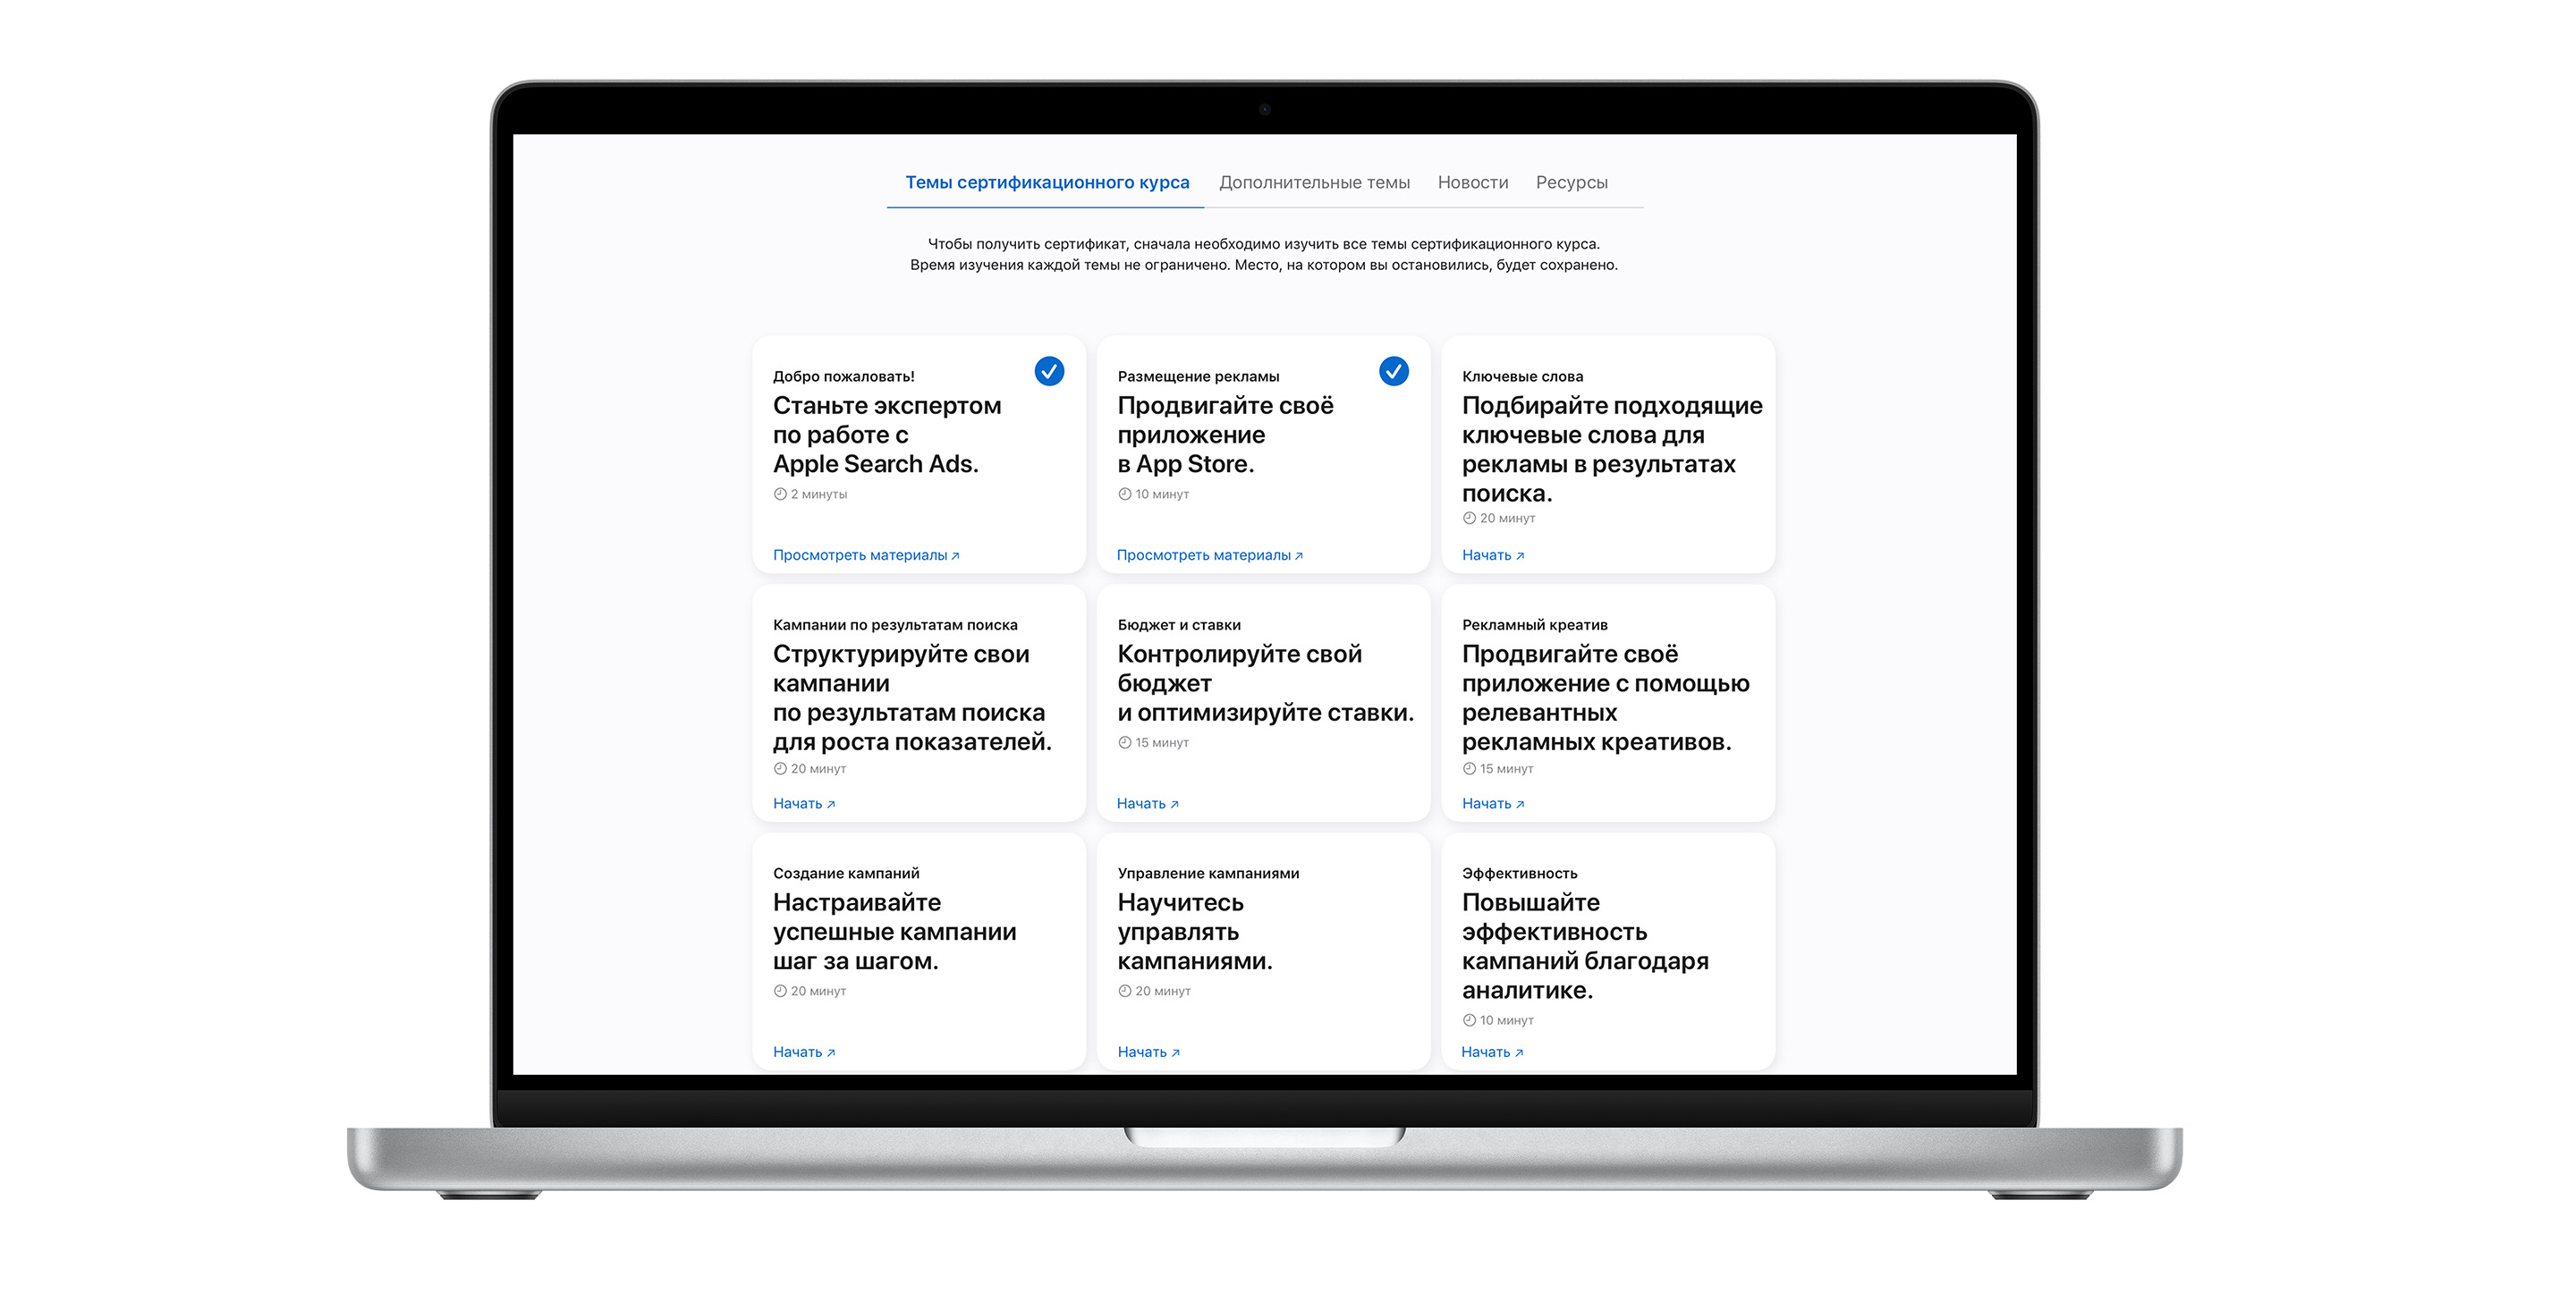 Страница тем сертификационного курса Apple Search Ads, состоящая из девяти модулей. Модули первых двух тем отмечены синими галочками, которые обозначают, что эти темы пройдены.